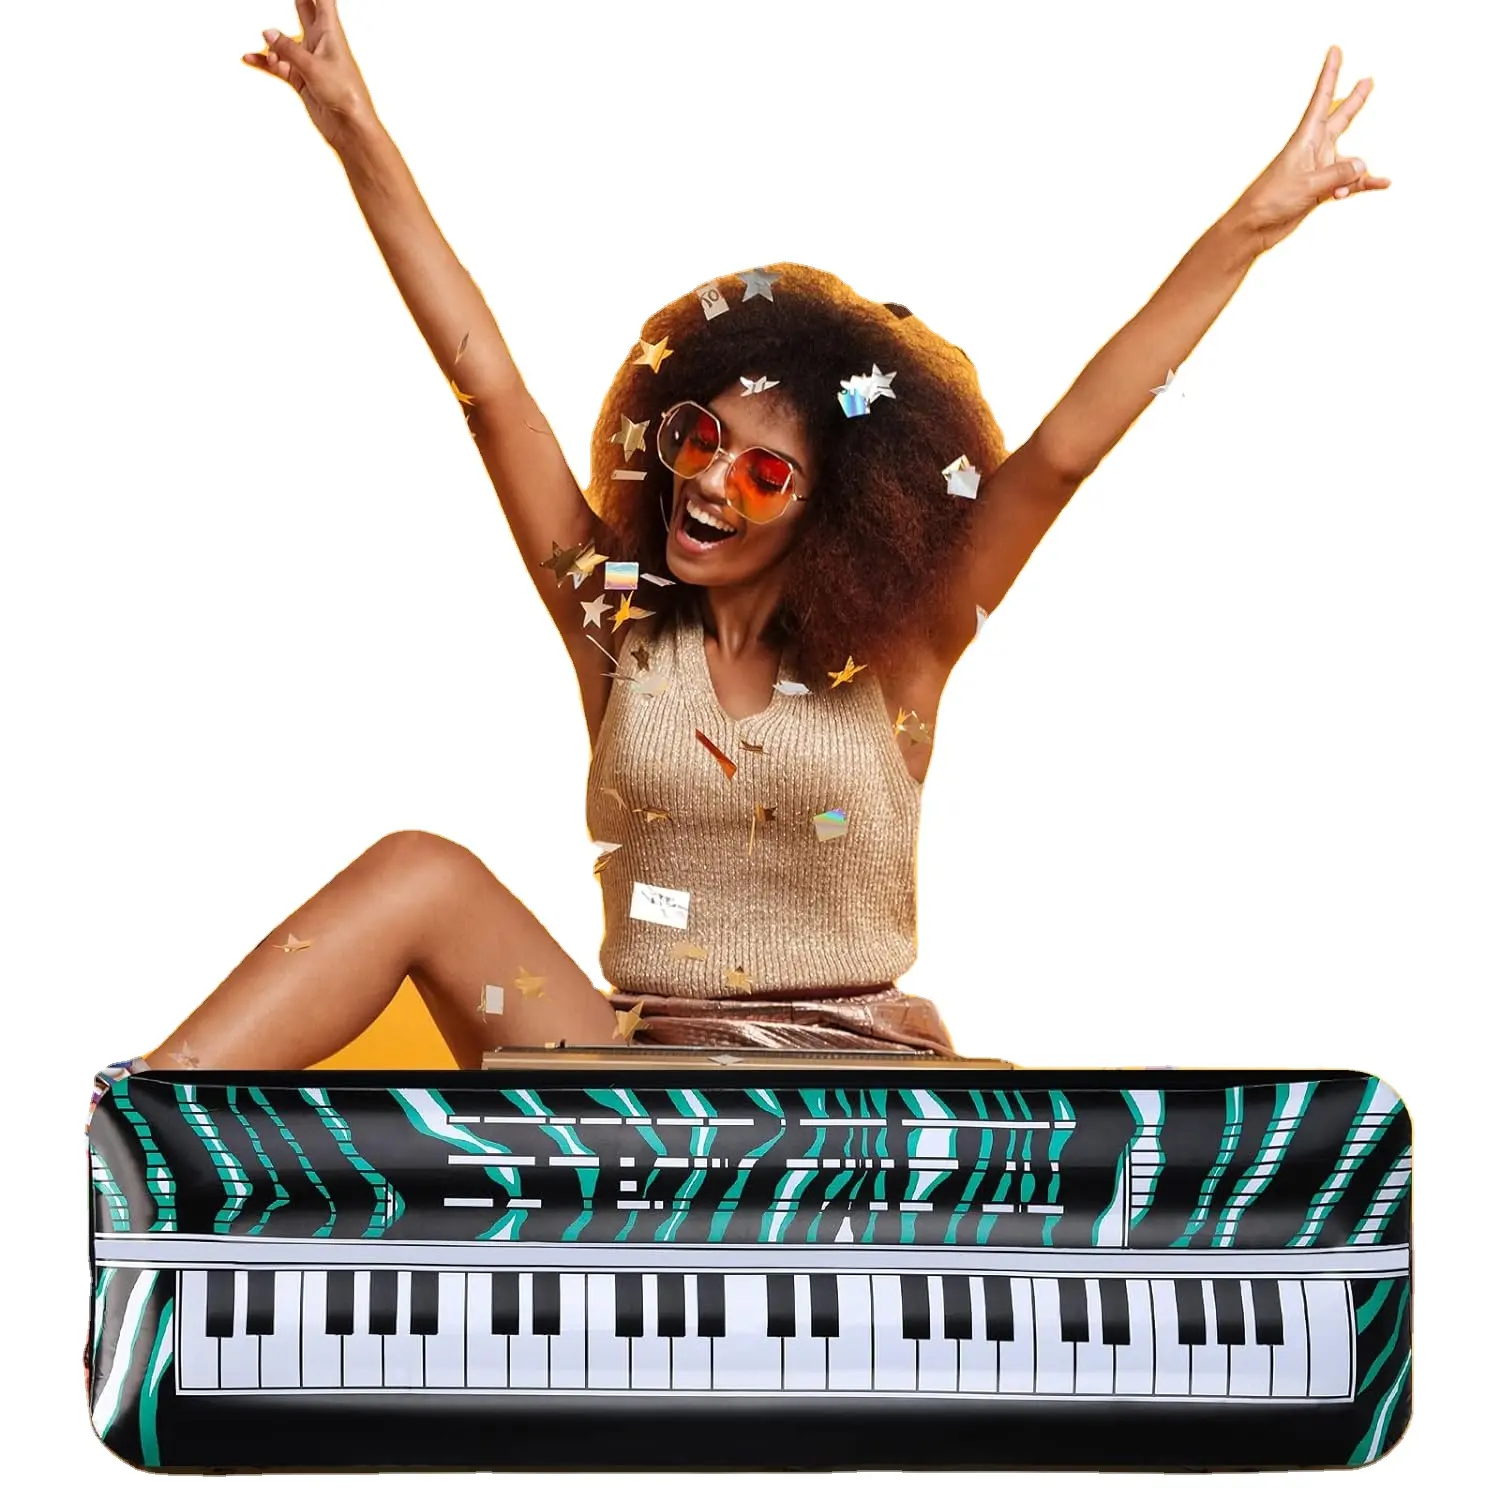 Teclado inflable Piano Rock Star Toys Accesorios de fiesta inflables Explotar para 80s 90s Fiesta temática Carnaval Suministros de cumpleaños